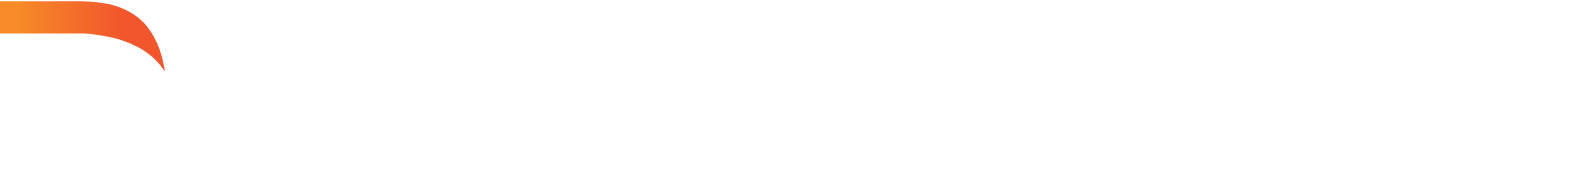 Darktrace logo large for dark backgrounds (transparent PNG)